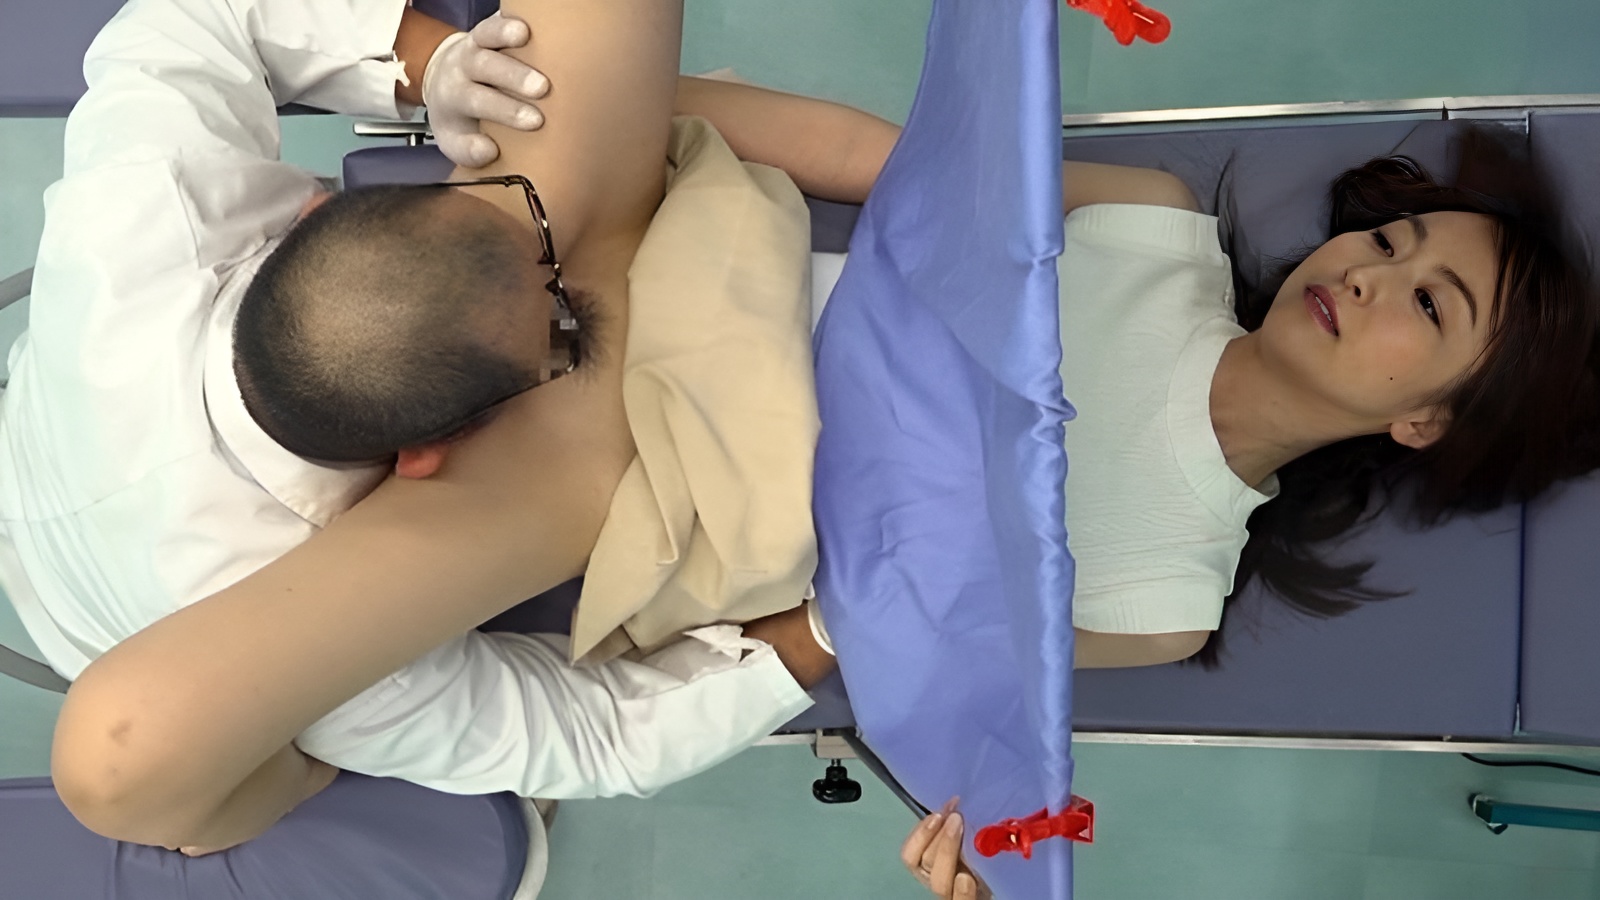 UMD-754 Ginecologista pervertido adora chupar a buceta dos pacientes